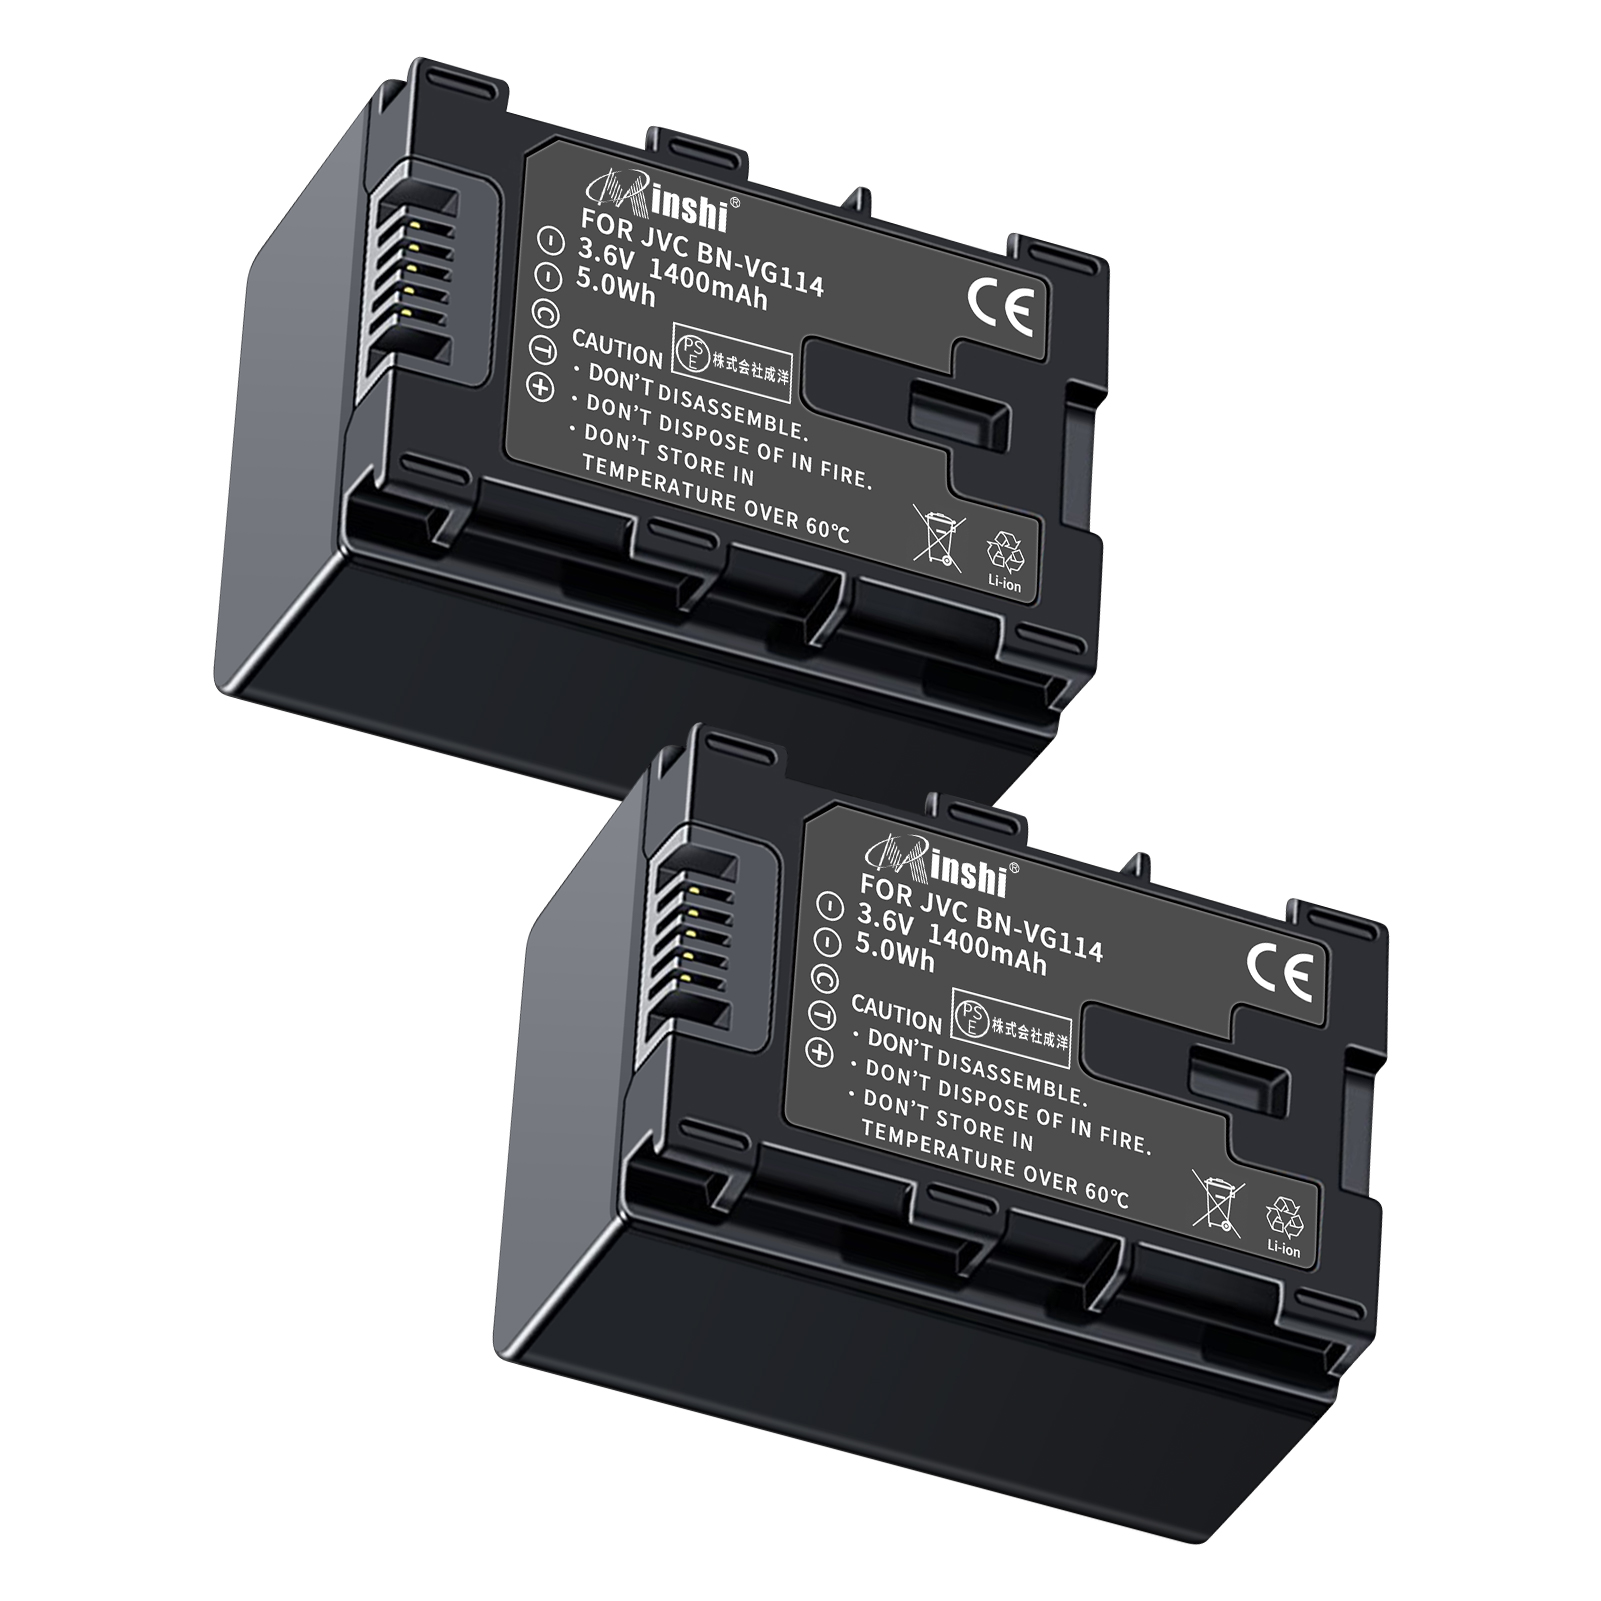 【２個セット】 minshi VICTOR GZ-E280 対応 互換バッテリー 1400mAh PSE認定済 高品質交換用バッテリー